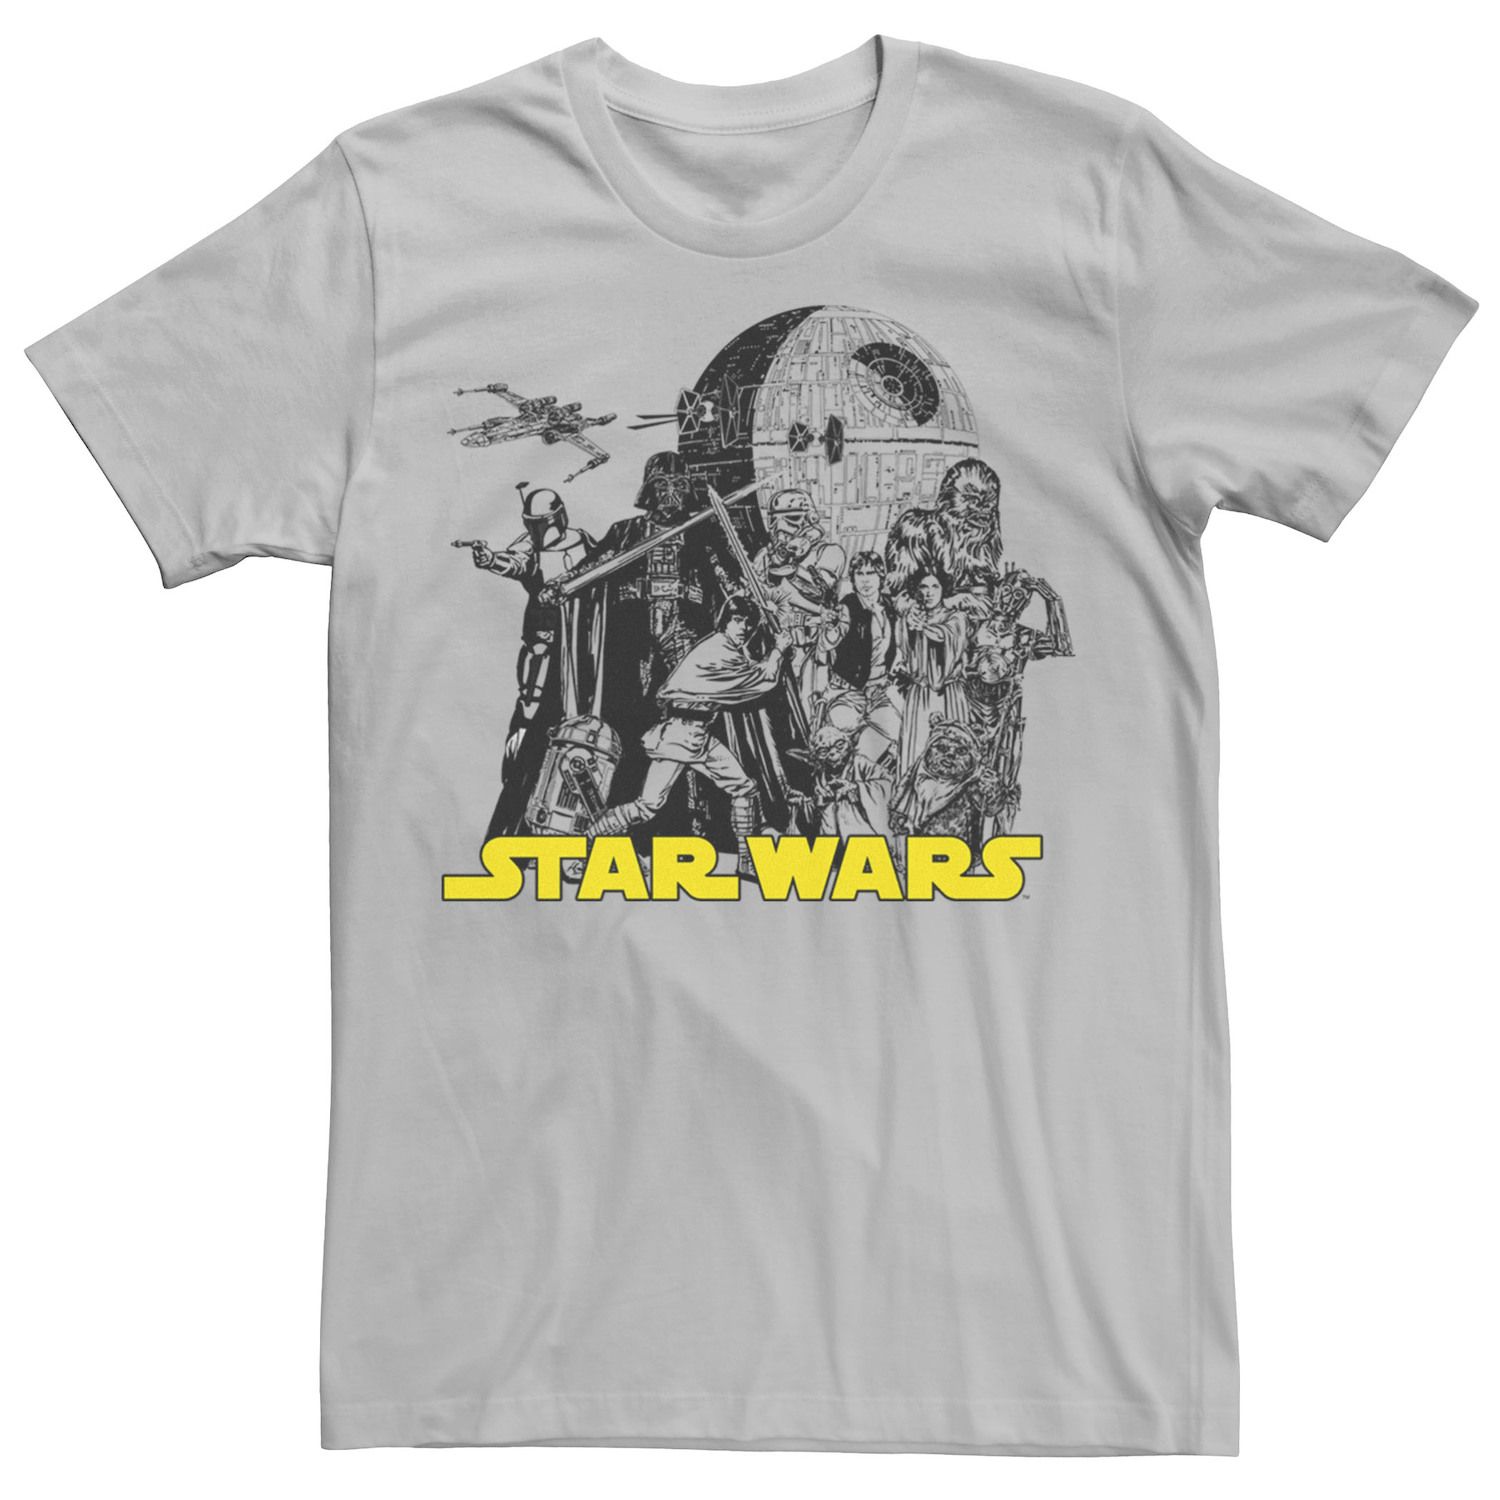 Мужская футболка с плакатом и плакатом «Звездные войны» Licensed Character